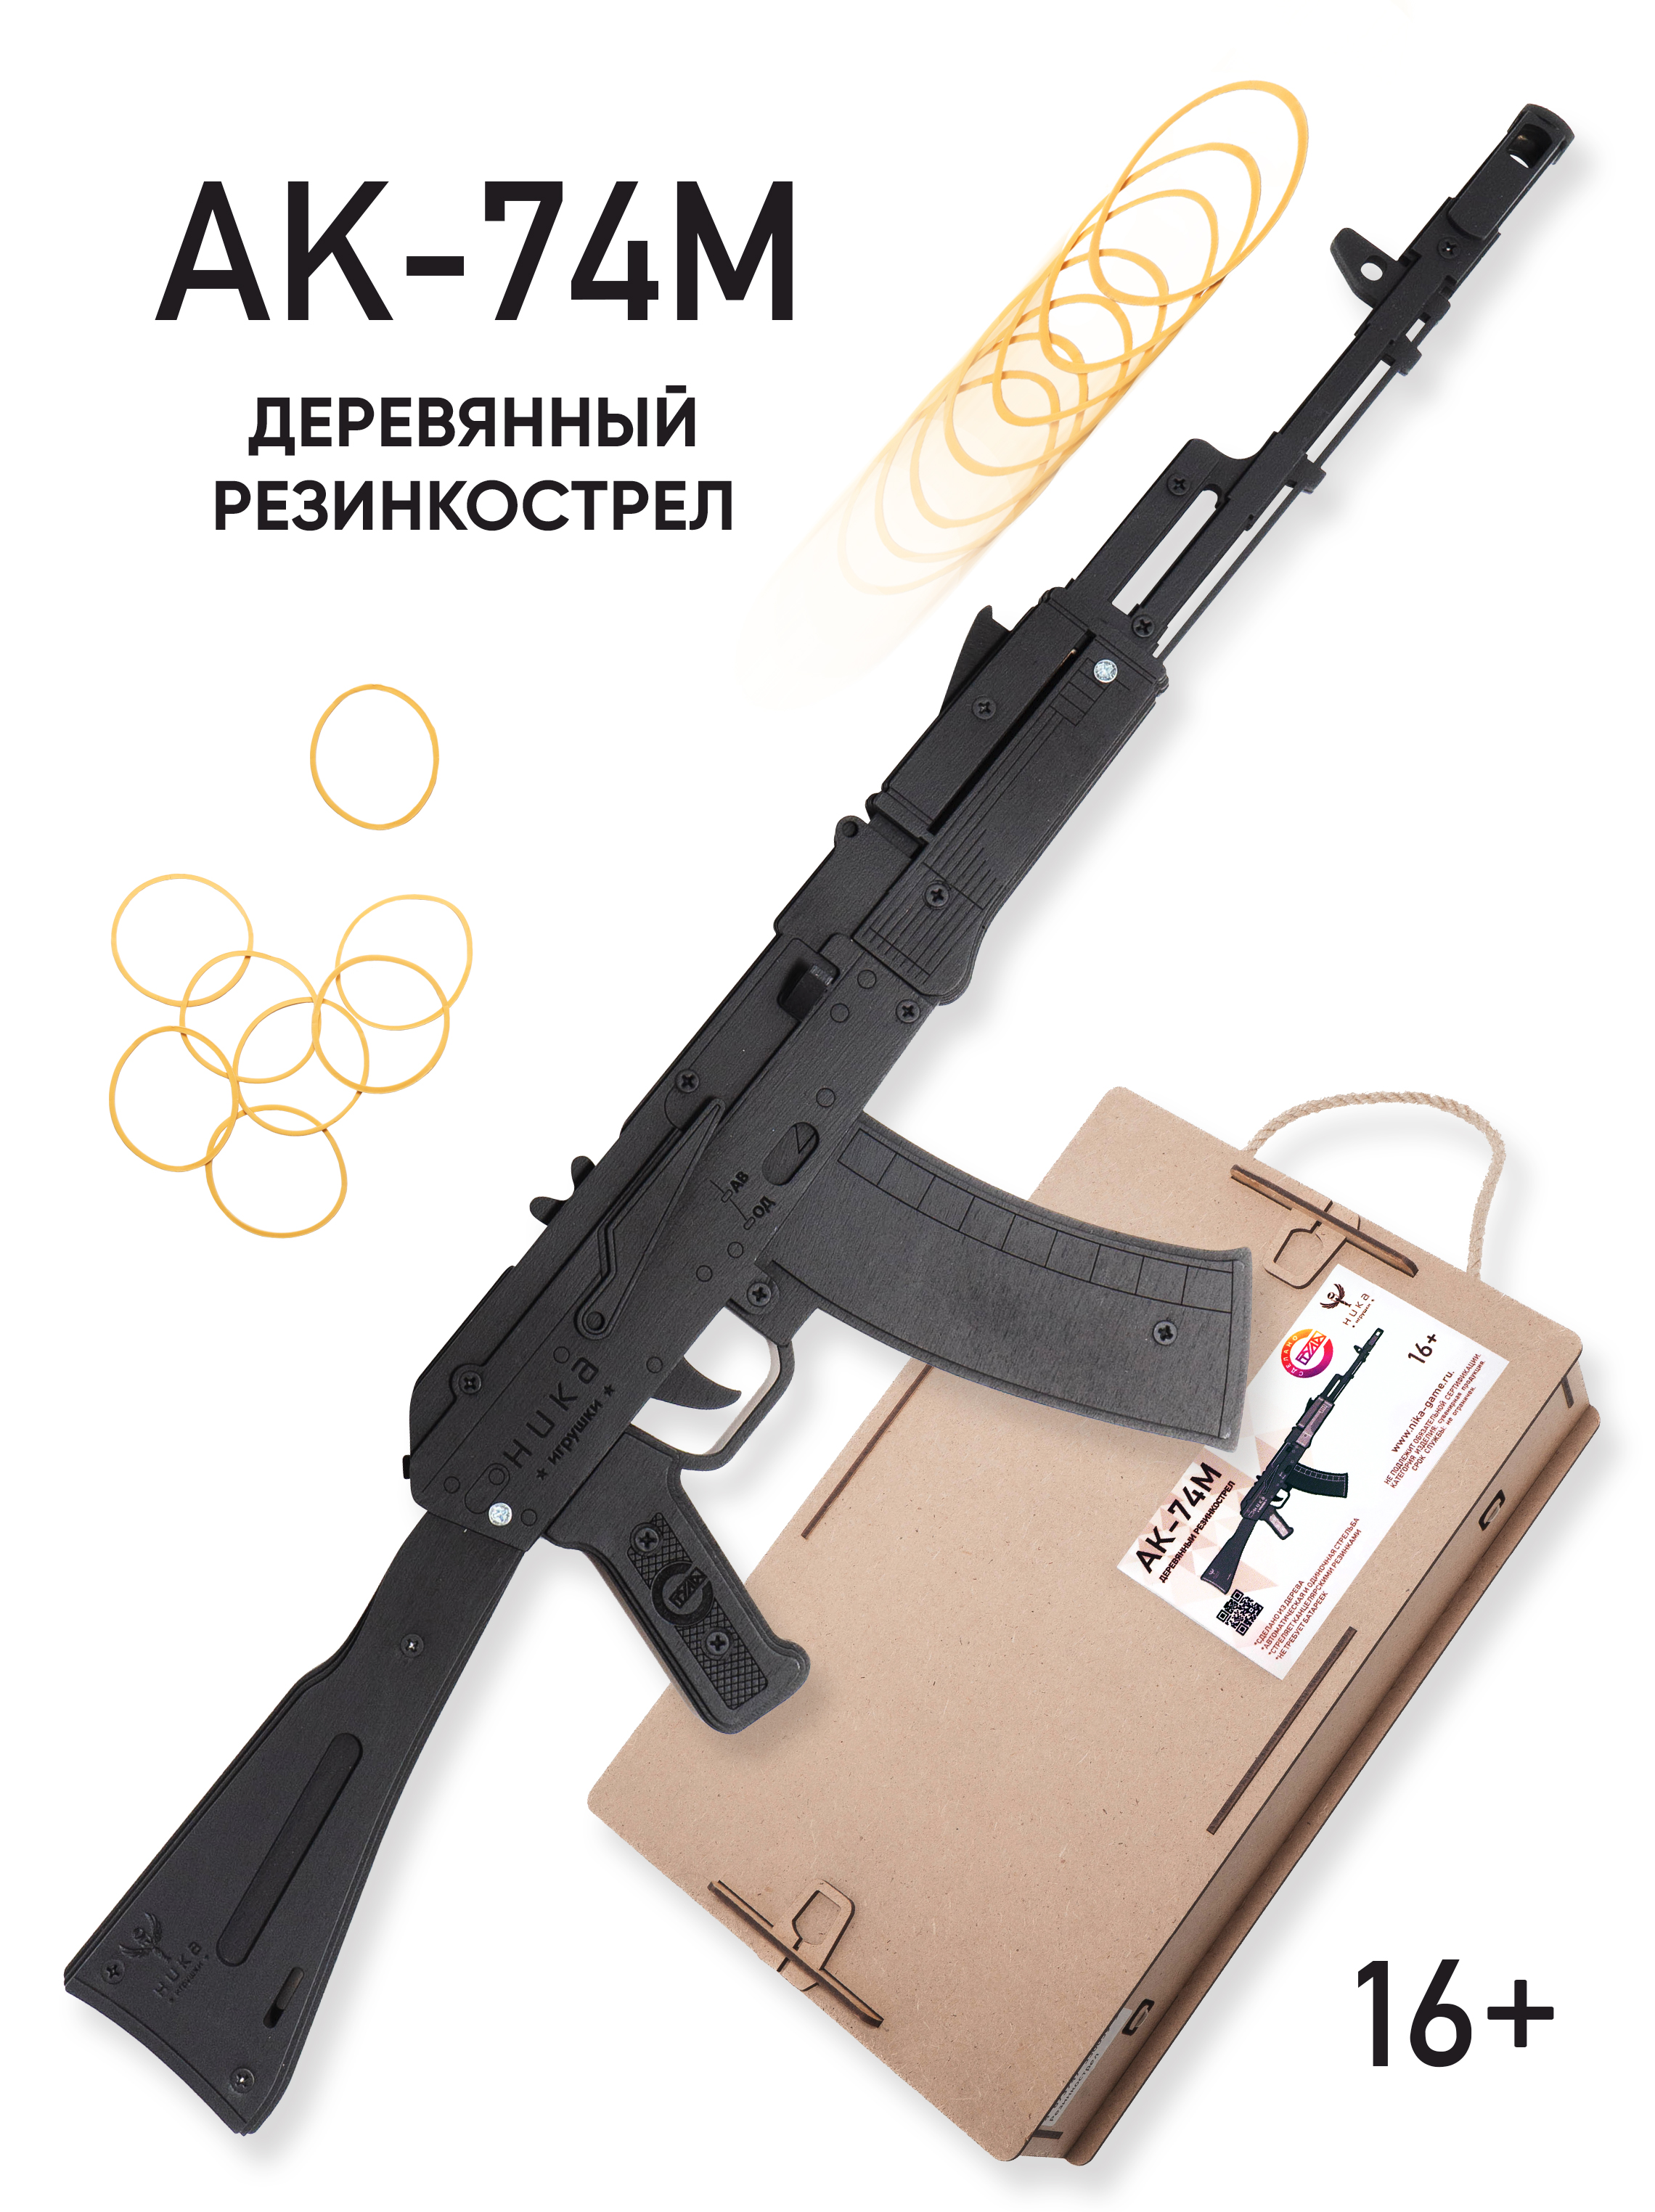 Автомат игрушечный АК-74М в подарочной коробке резинкострел игрушечный из дерева армия россии ппш окрашенный ar p010